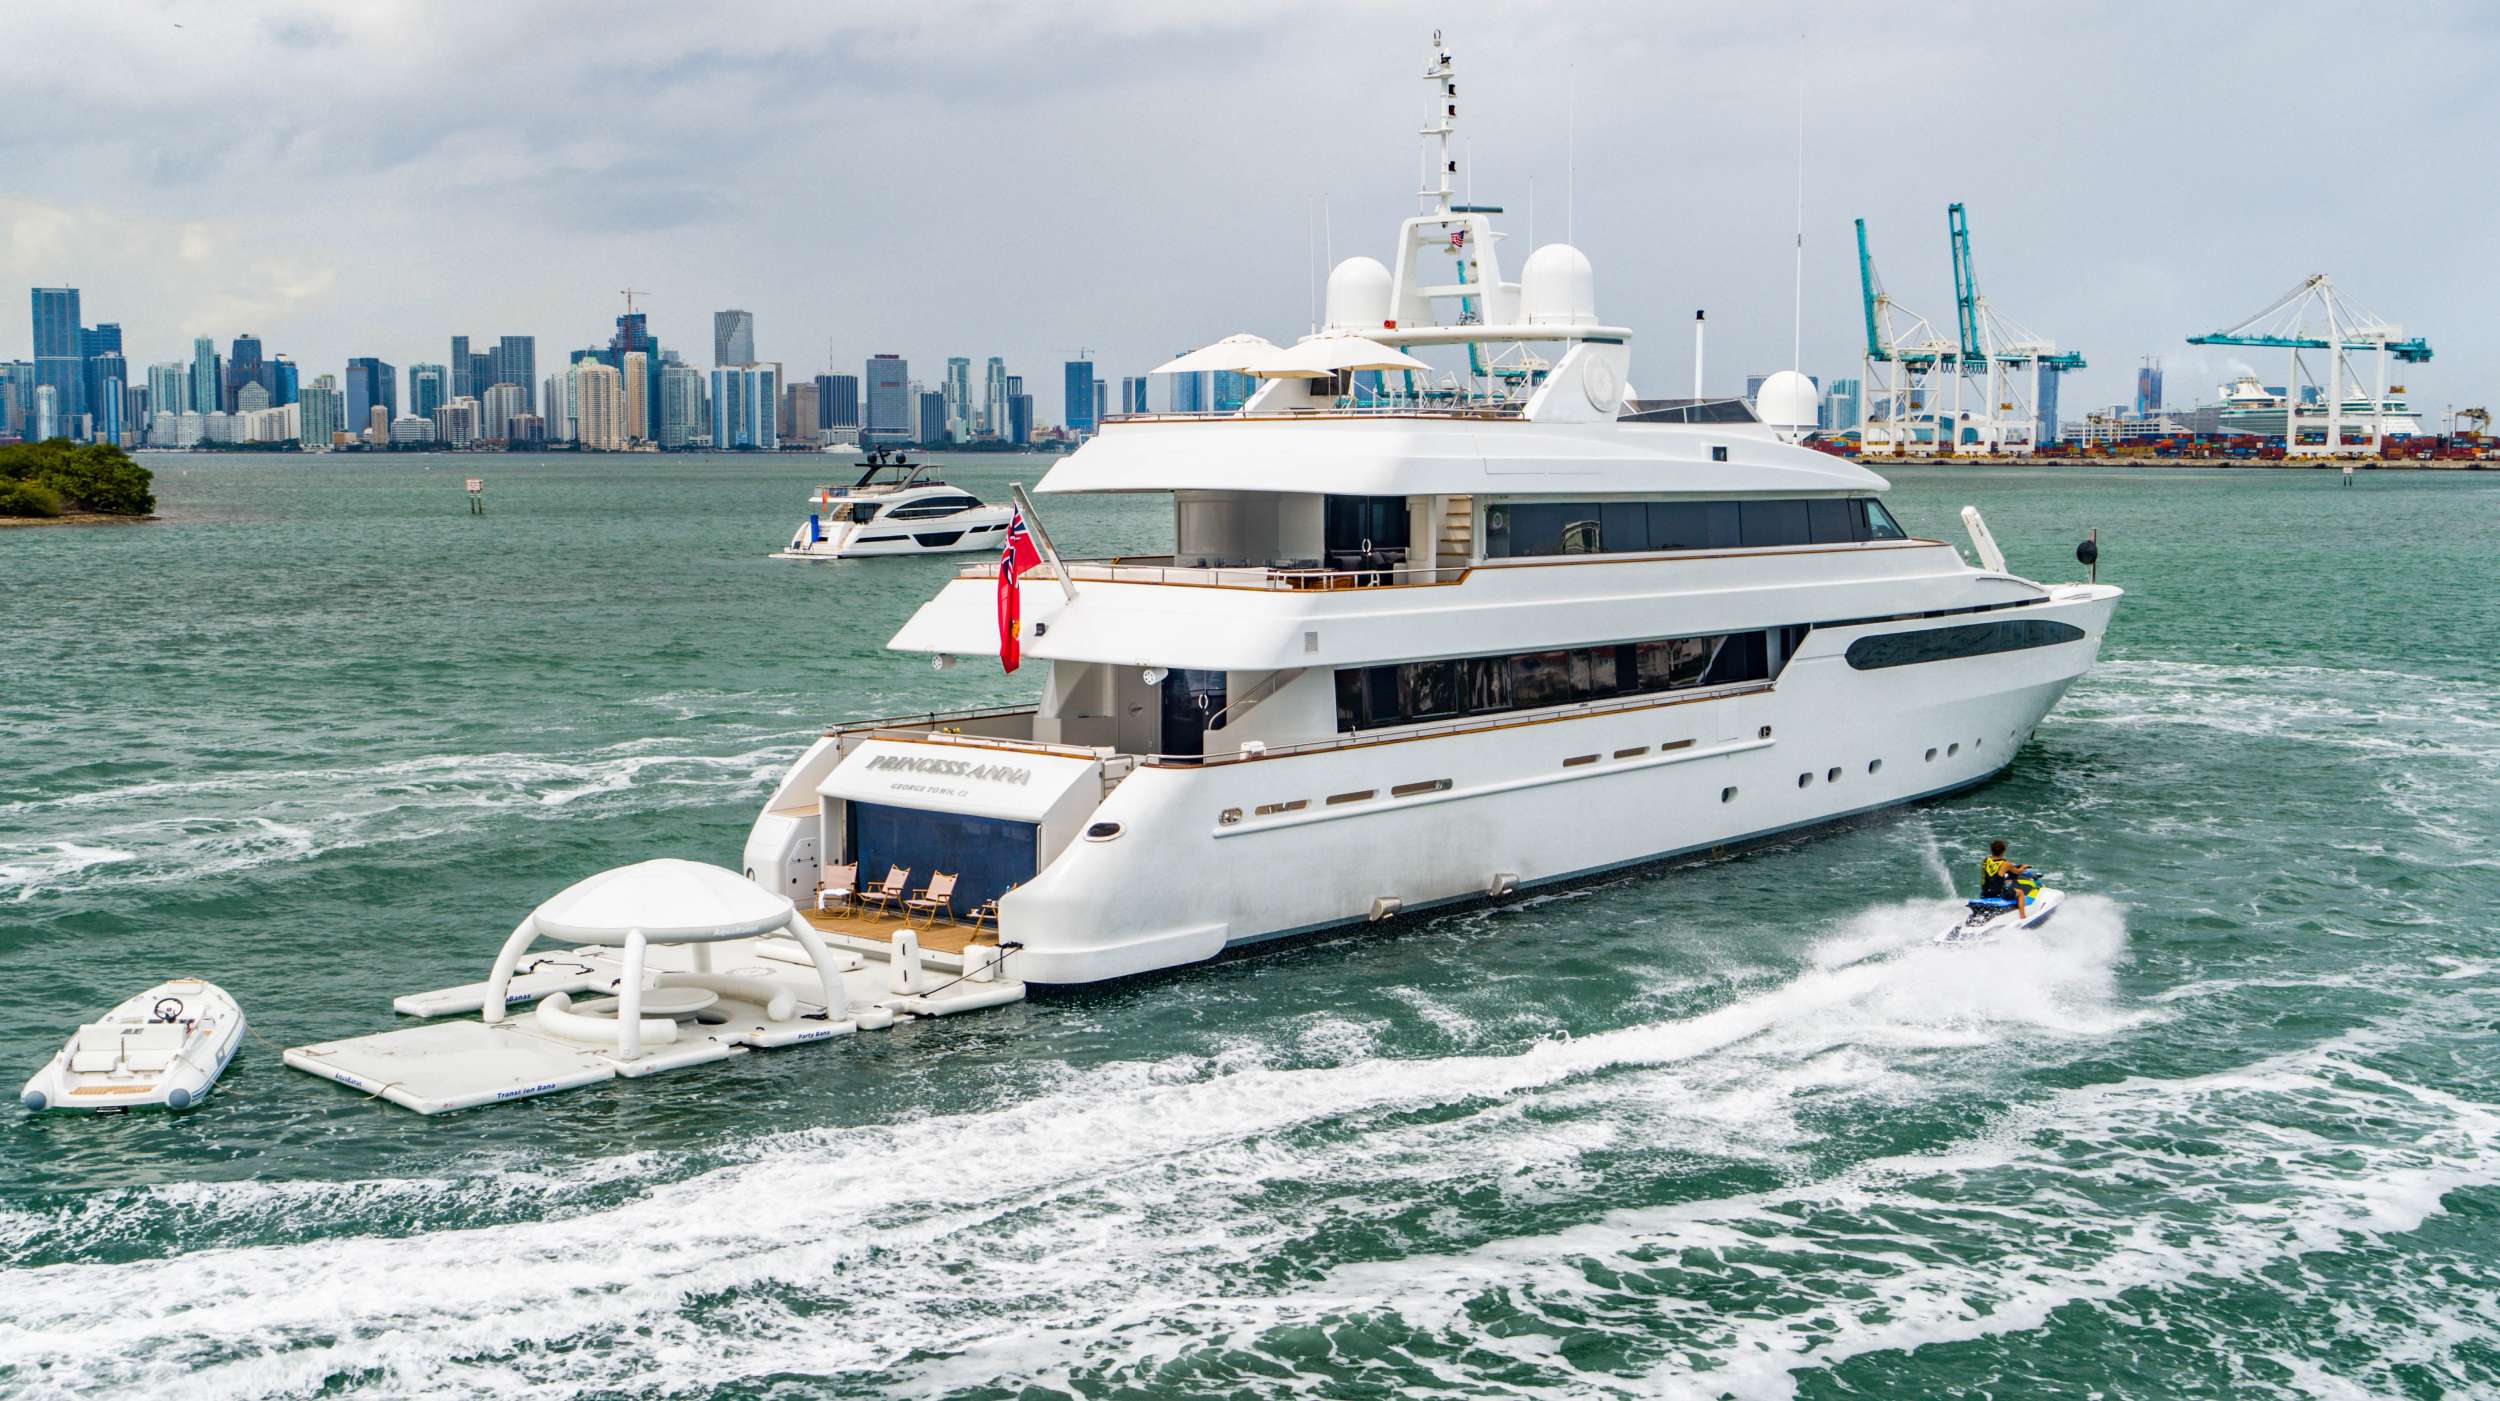 Princess Anna - Motor Boat Charter USA & Boat hire in Florida & Bahamas 1